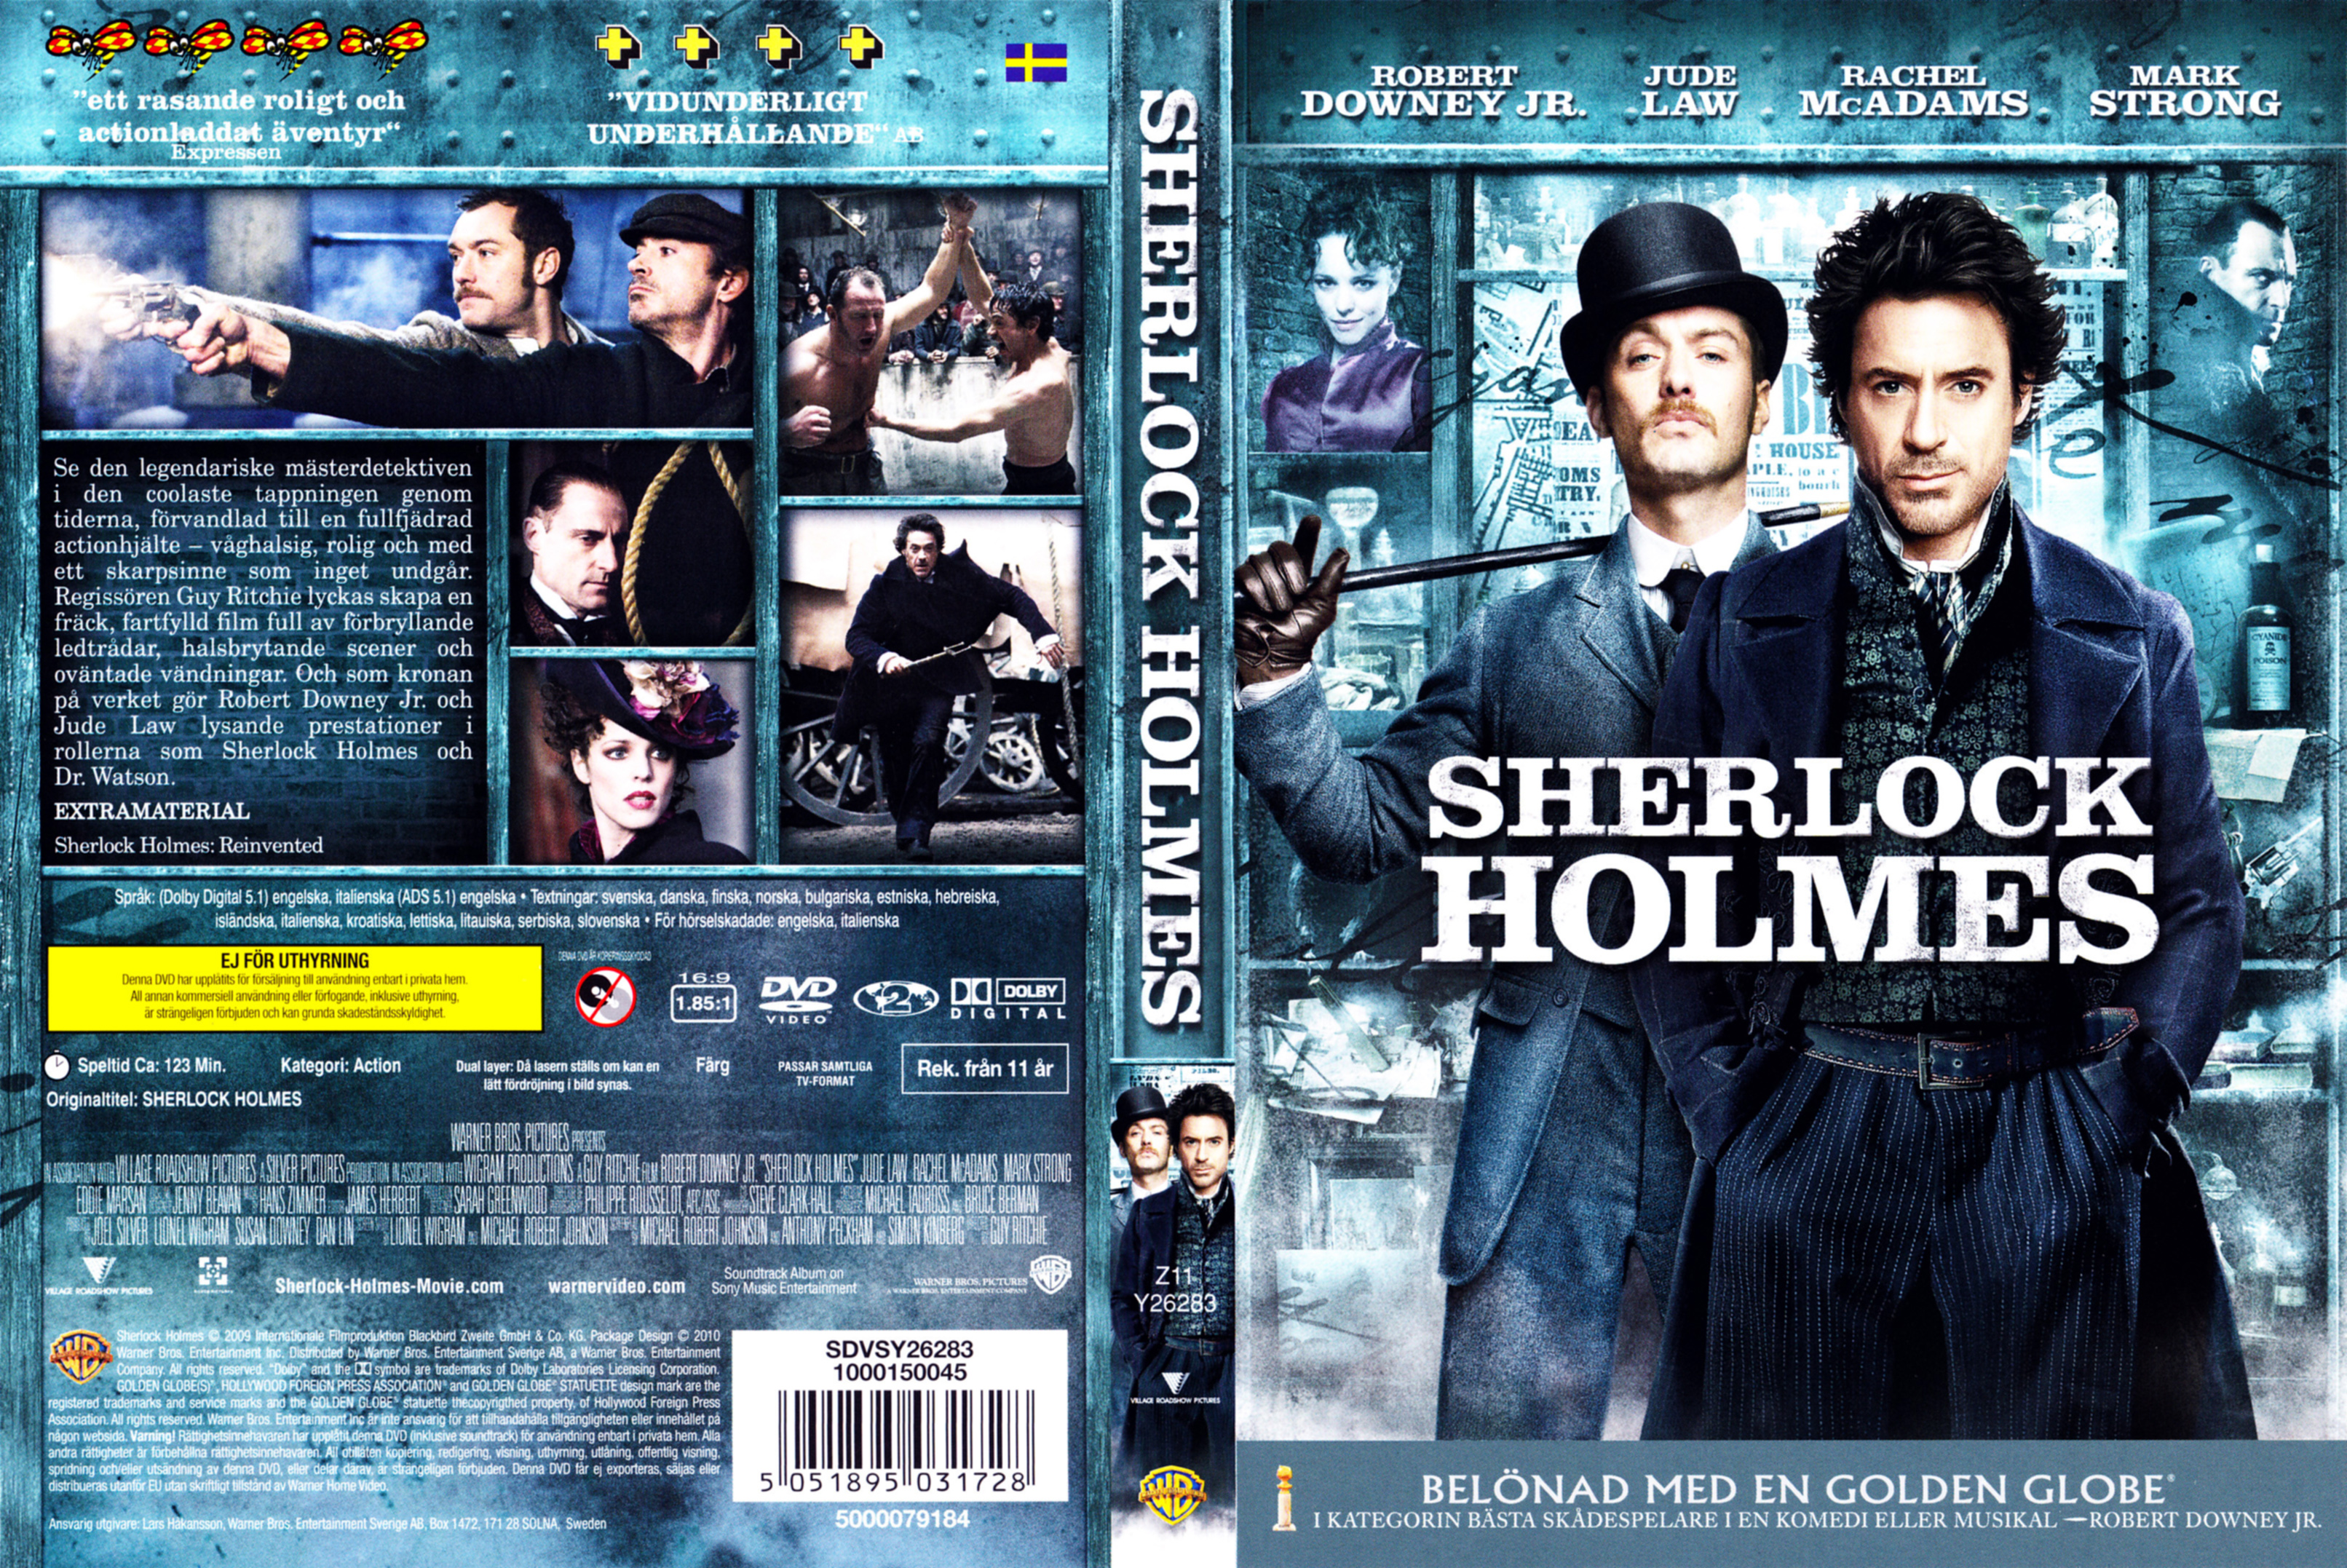 Шерлок Холмс 2009 Blu ray poster